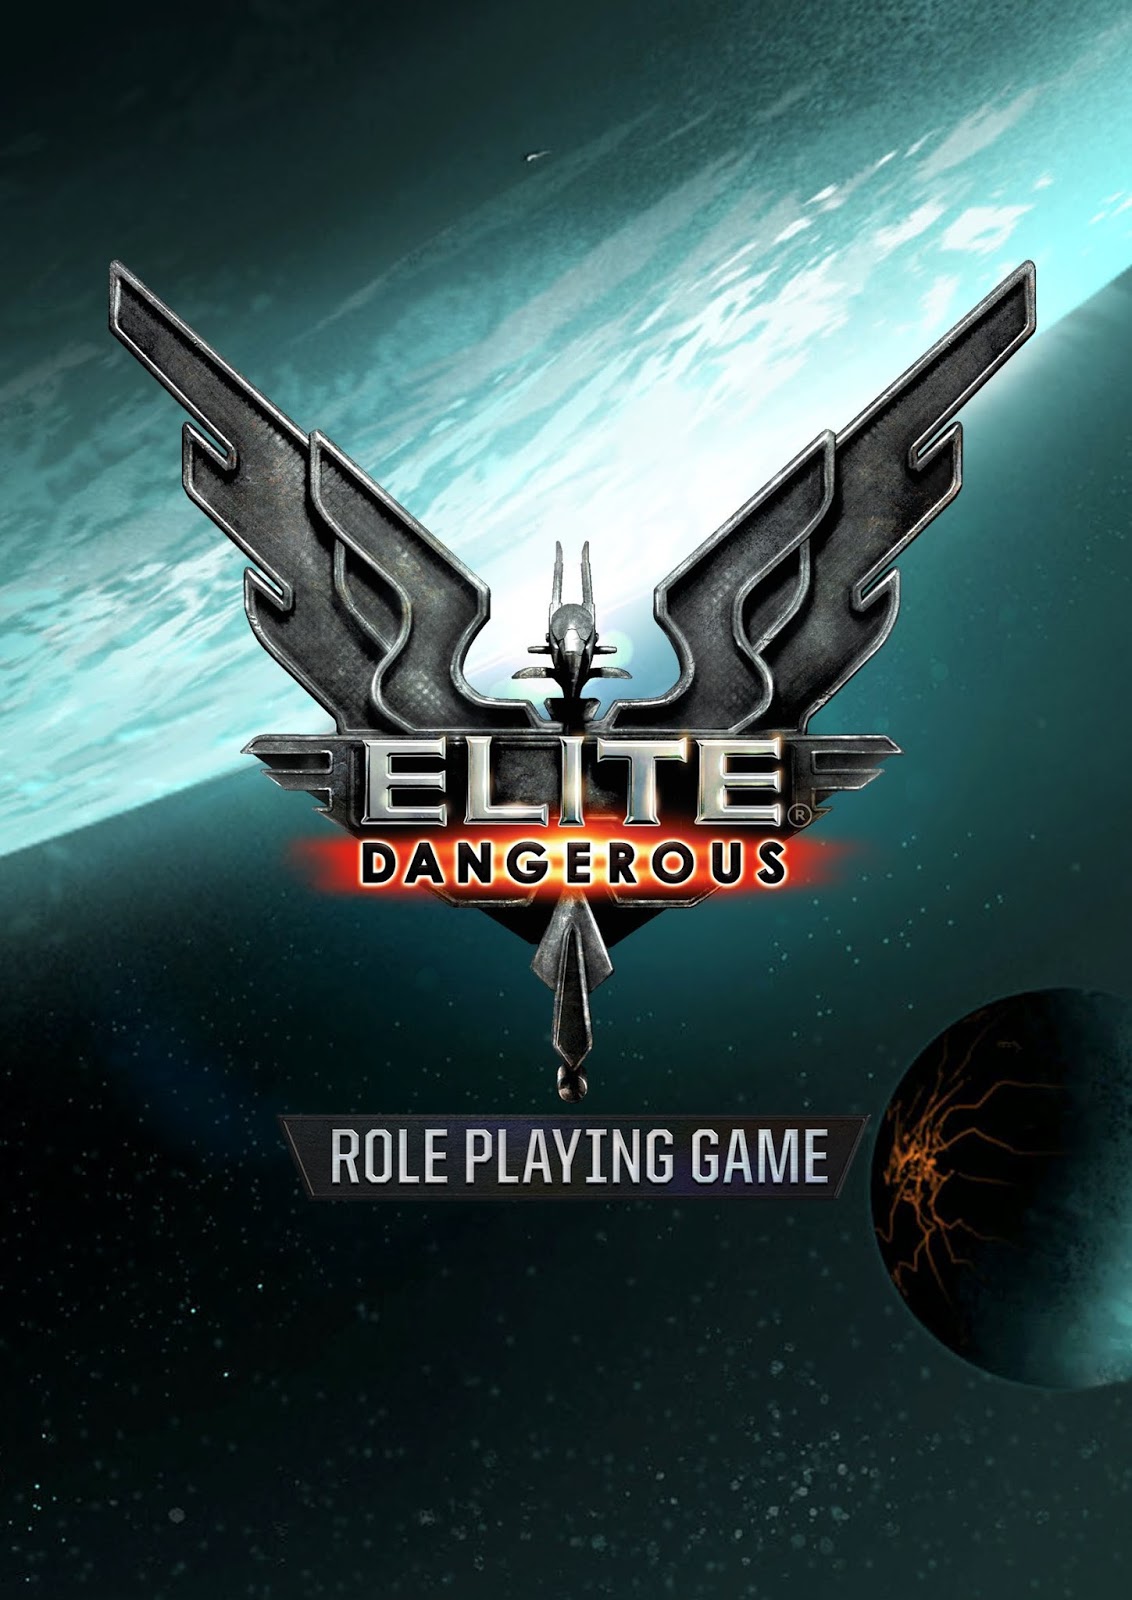 Elite: Dangerous Review